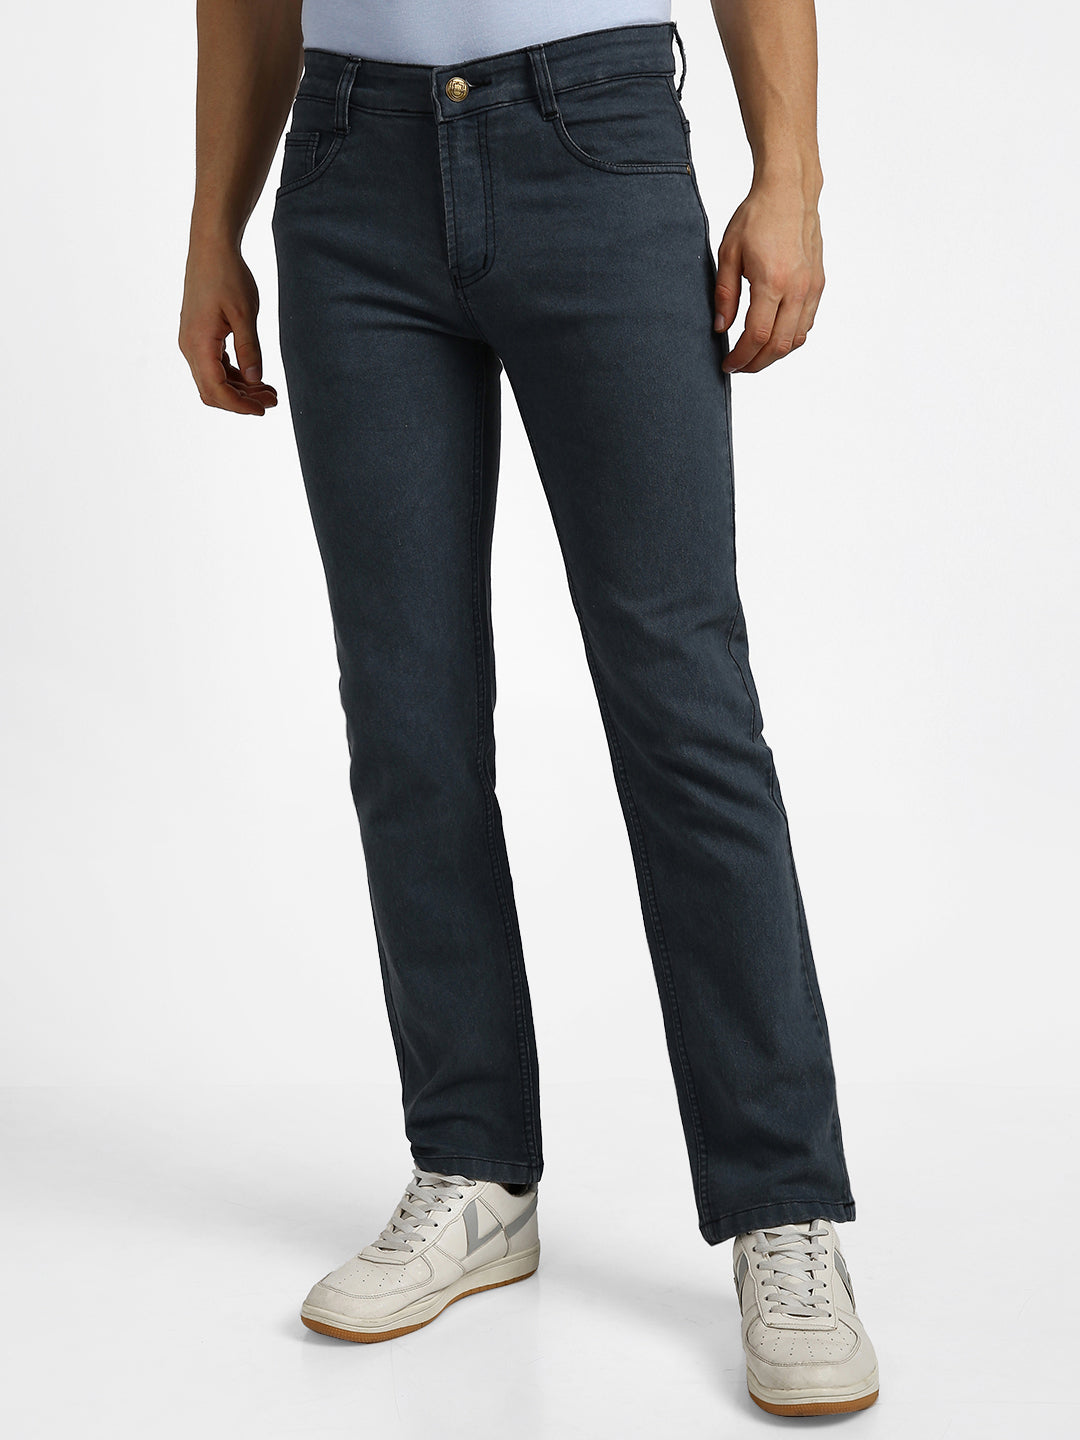 Men's Mild Grey Regular Fit Washed Jeans Stretchable